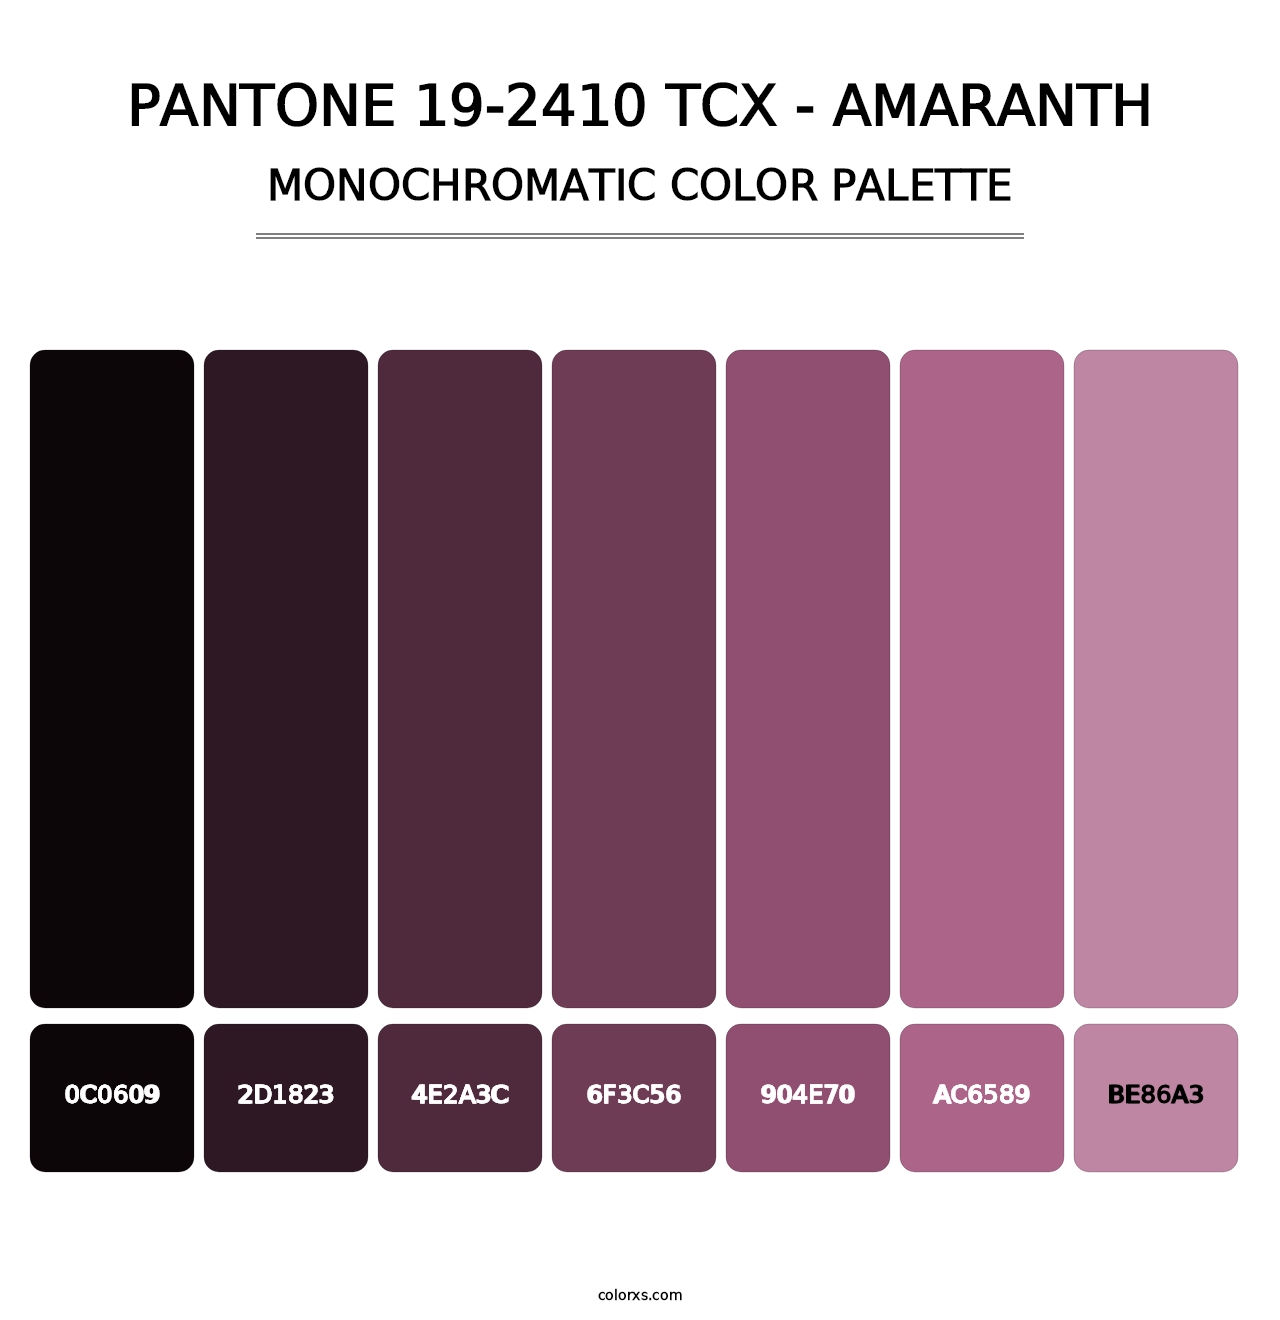 PANTONE 19-2410 TCX - Amaranth - Monochromatic Color Palette